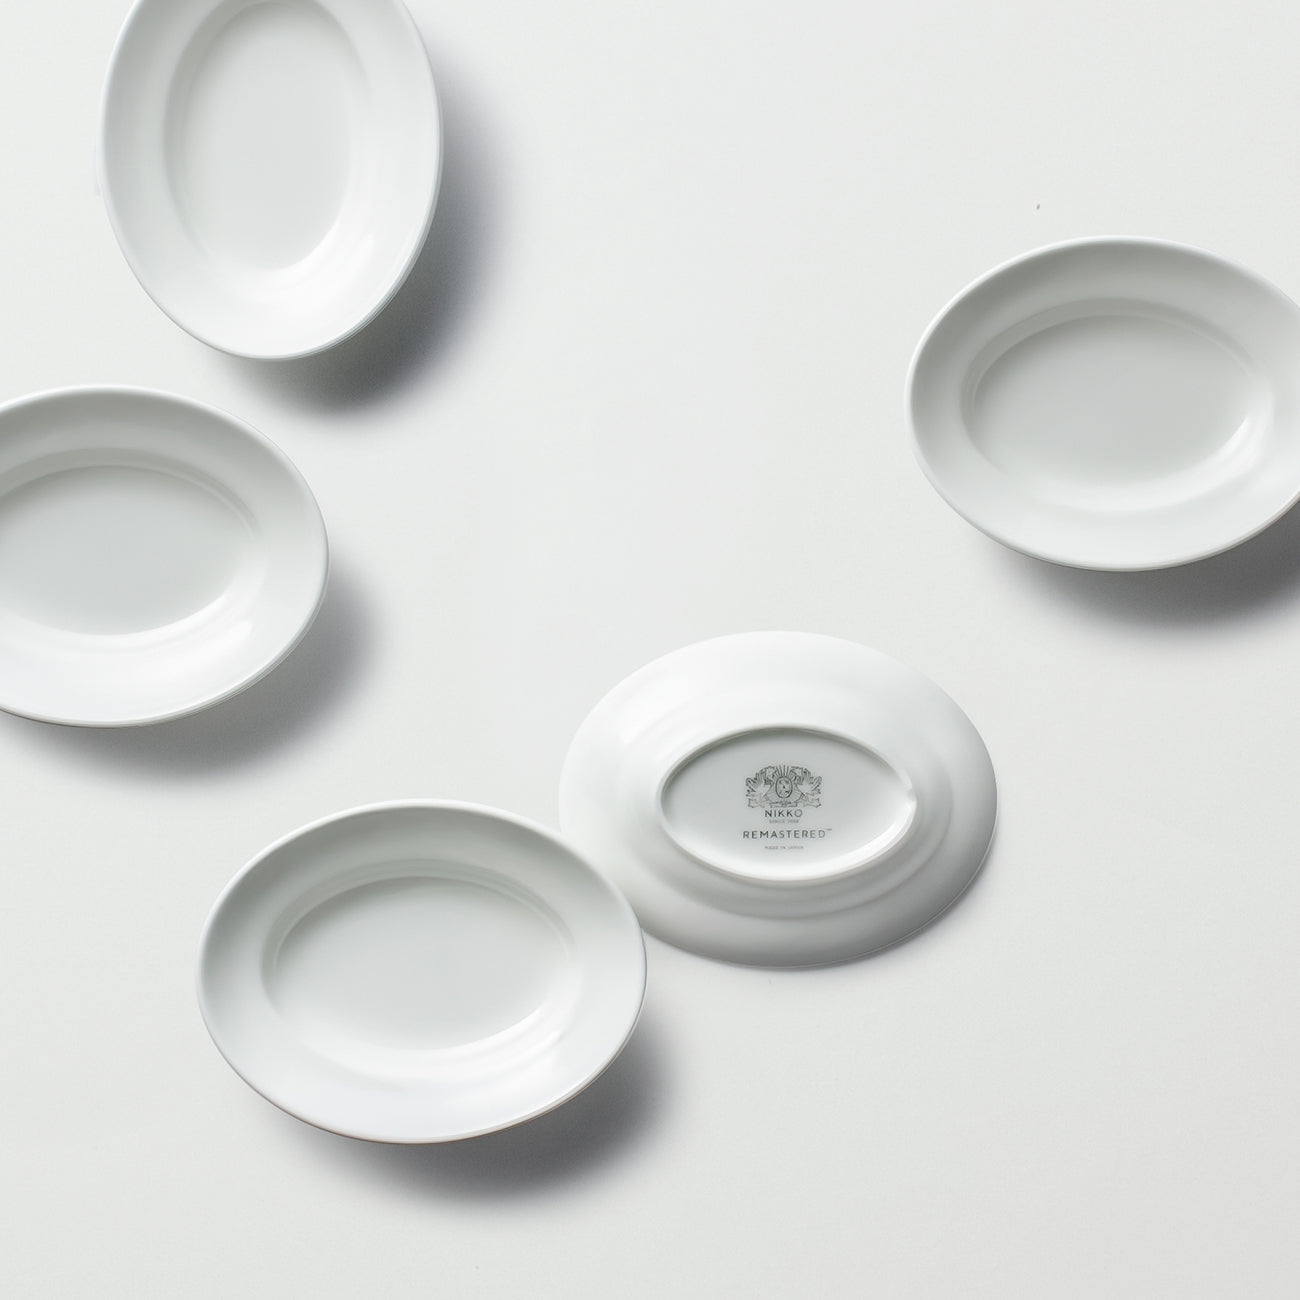 REMASTERED(リマスタード) オーバルプレート 13 | Lost and Found プレート・ボウル 食器 プレート(9~13cm) ニッコーの白い器 ファインボーンチャイナ 日本製陶磁器お皿